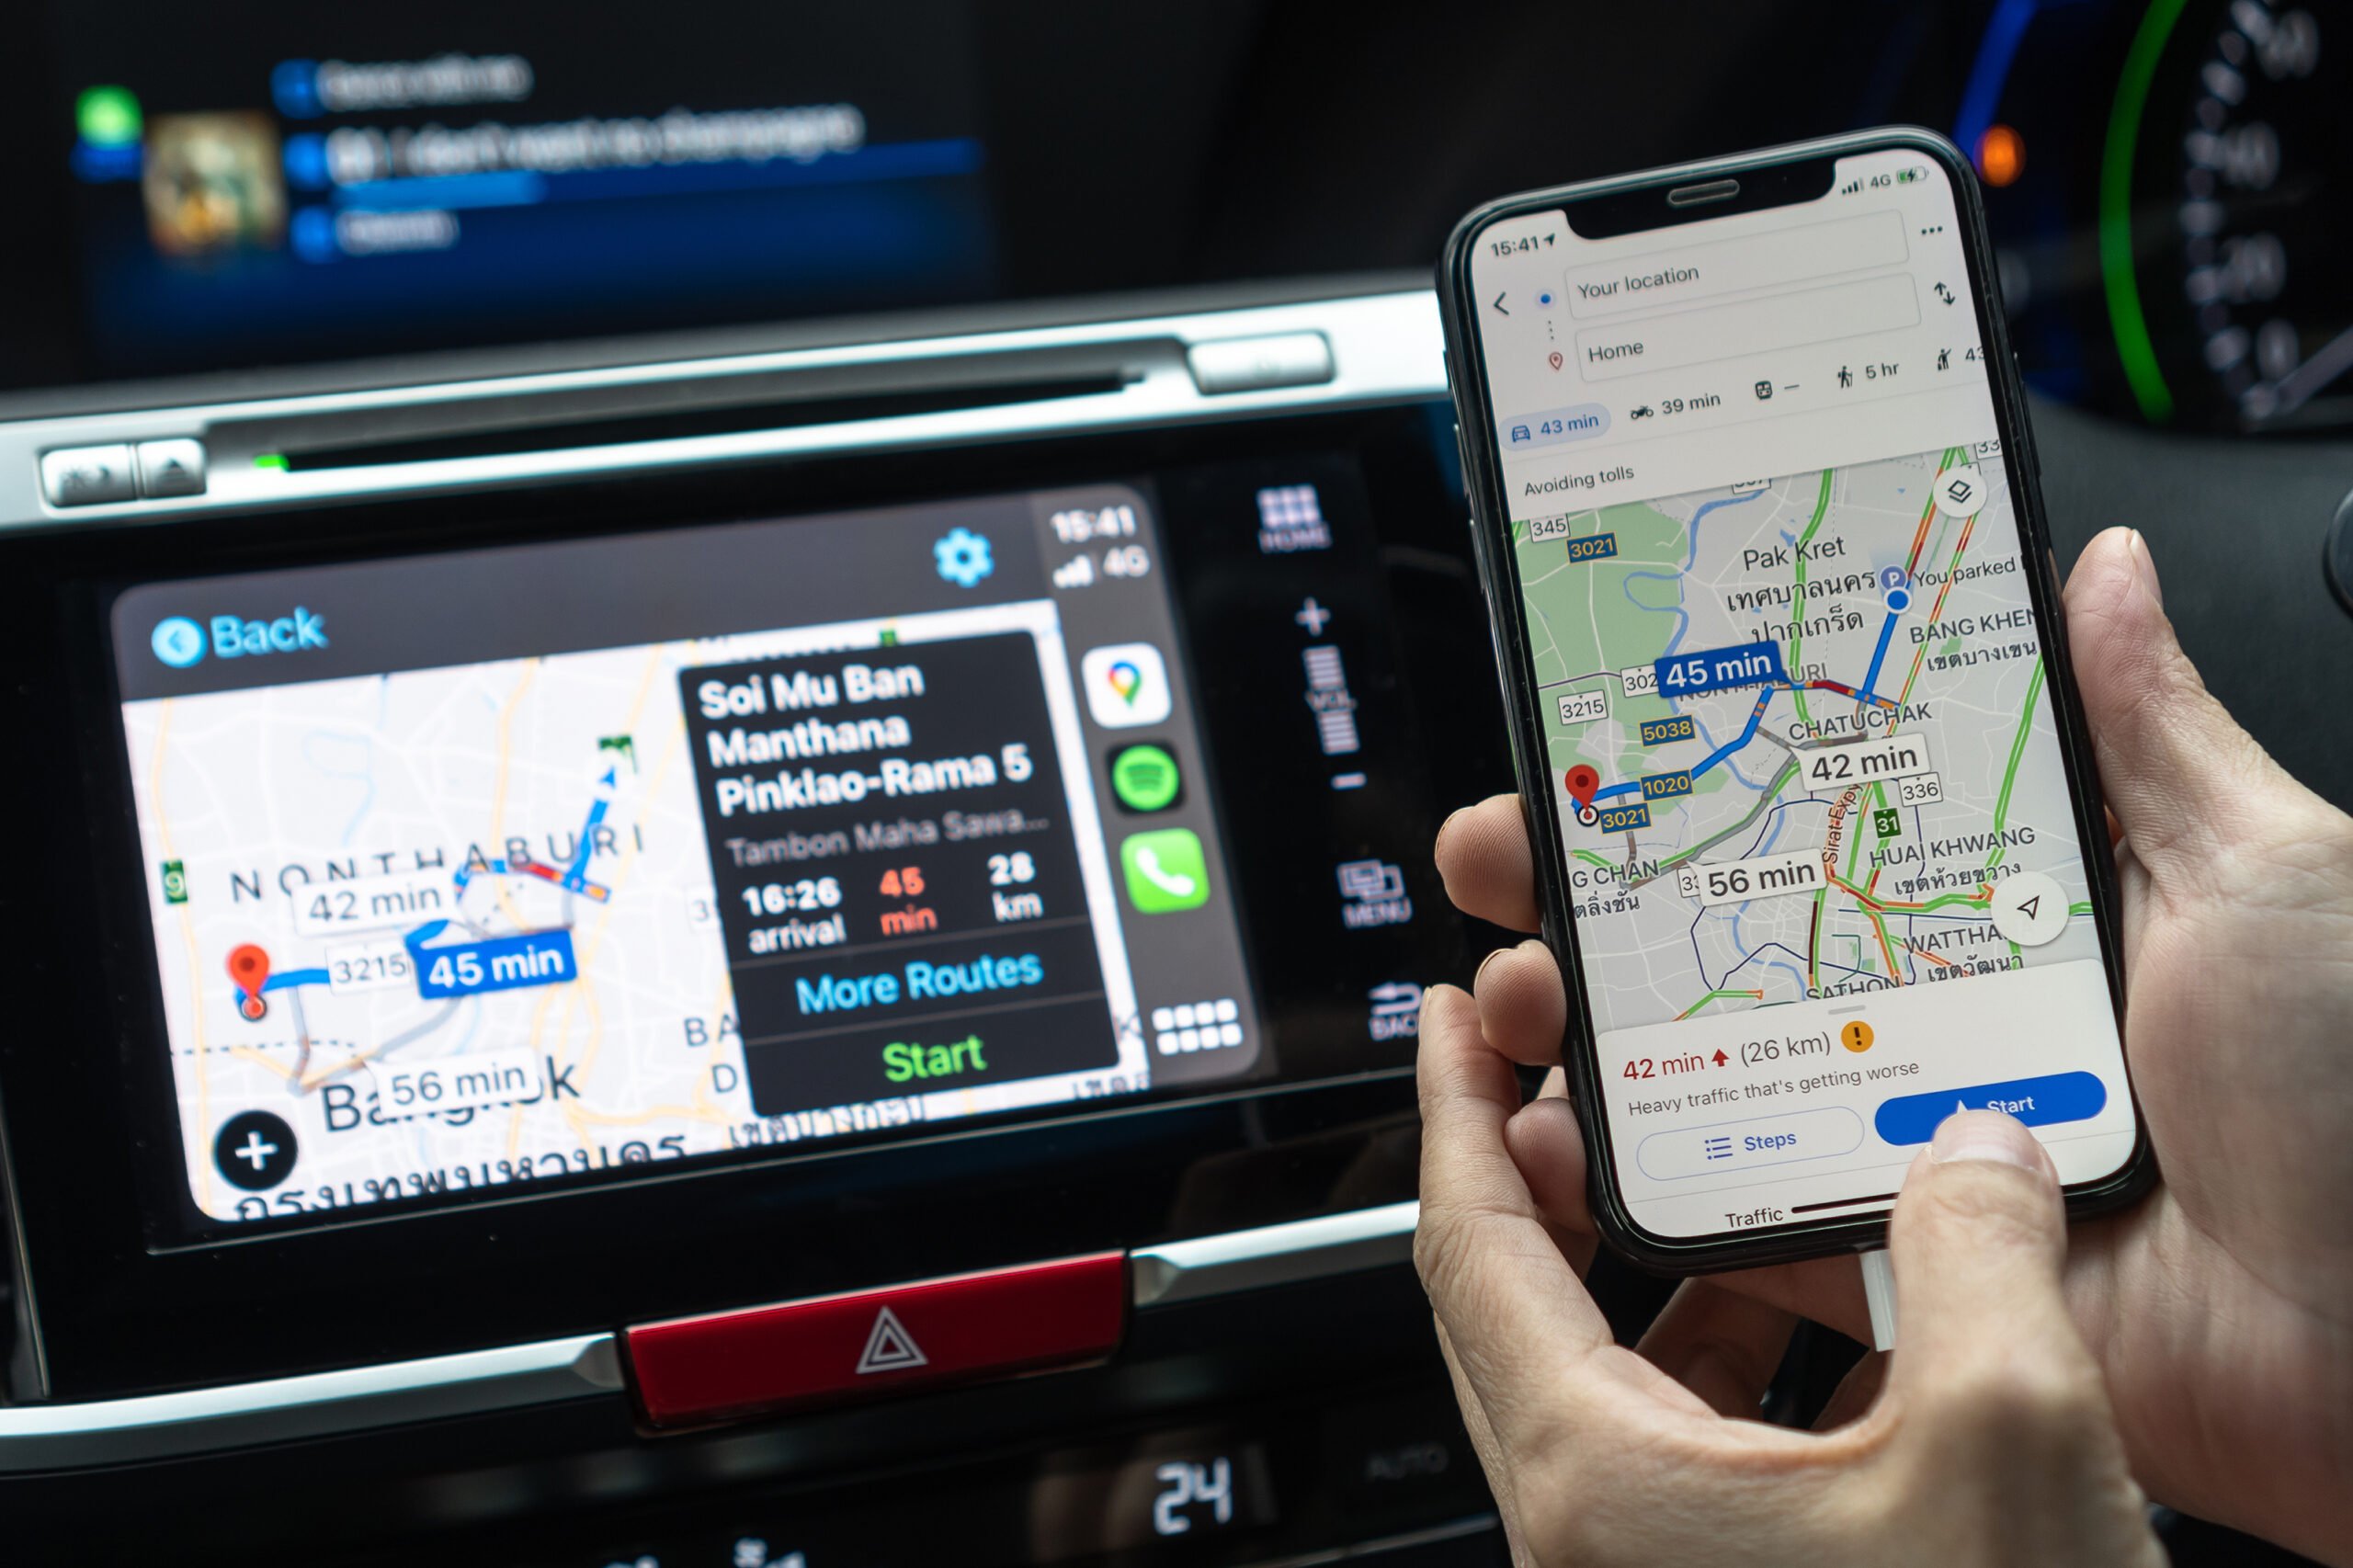 Dłoń trzymająca smartfon z włączoną aplikacją Google Maps nawigacyjną wskazującą trasę z ruchem drogowym obok ekranu nawigacji samochodowej.